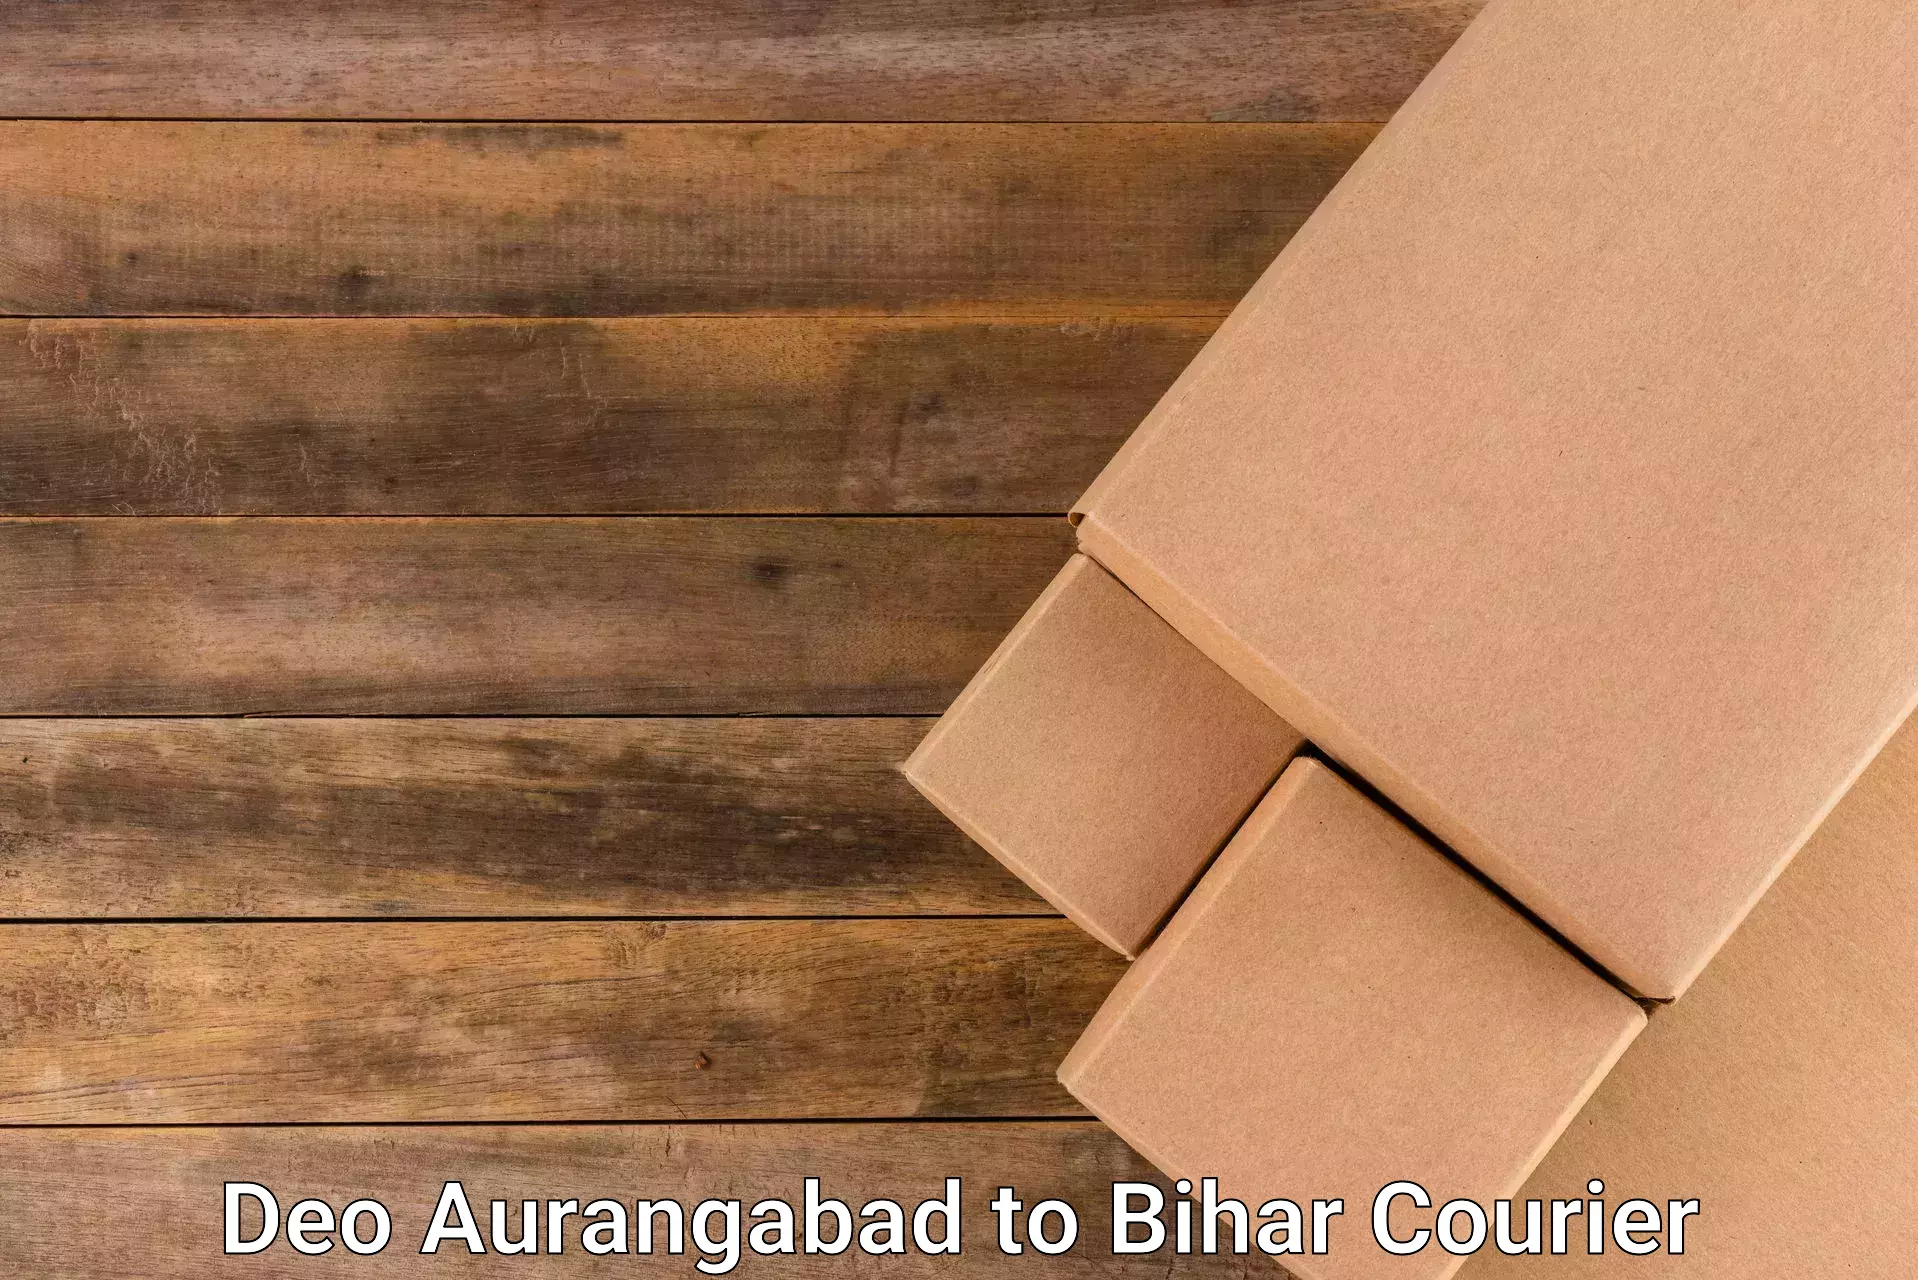 Courier rate comparison Deo Aurangabad to Narkatiaganj